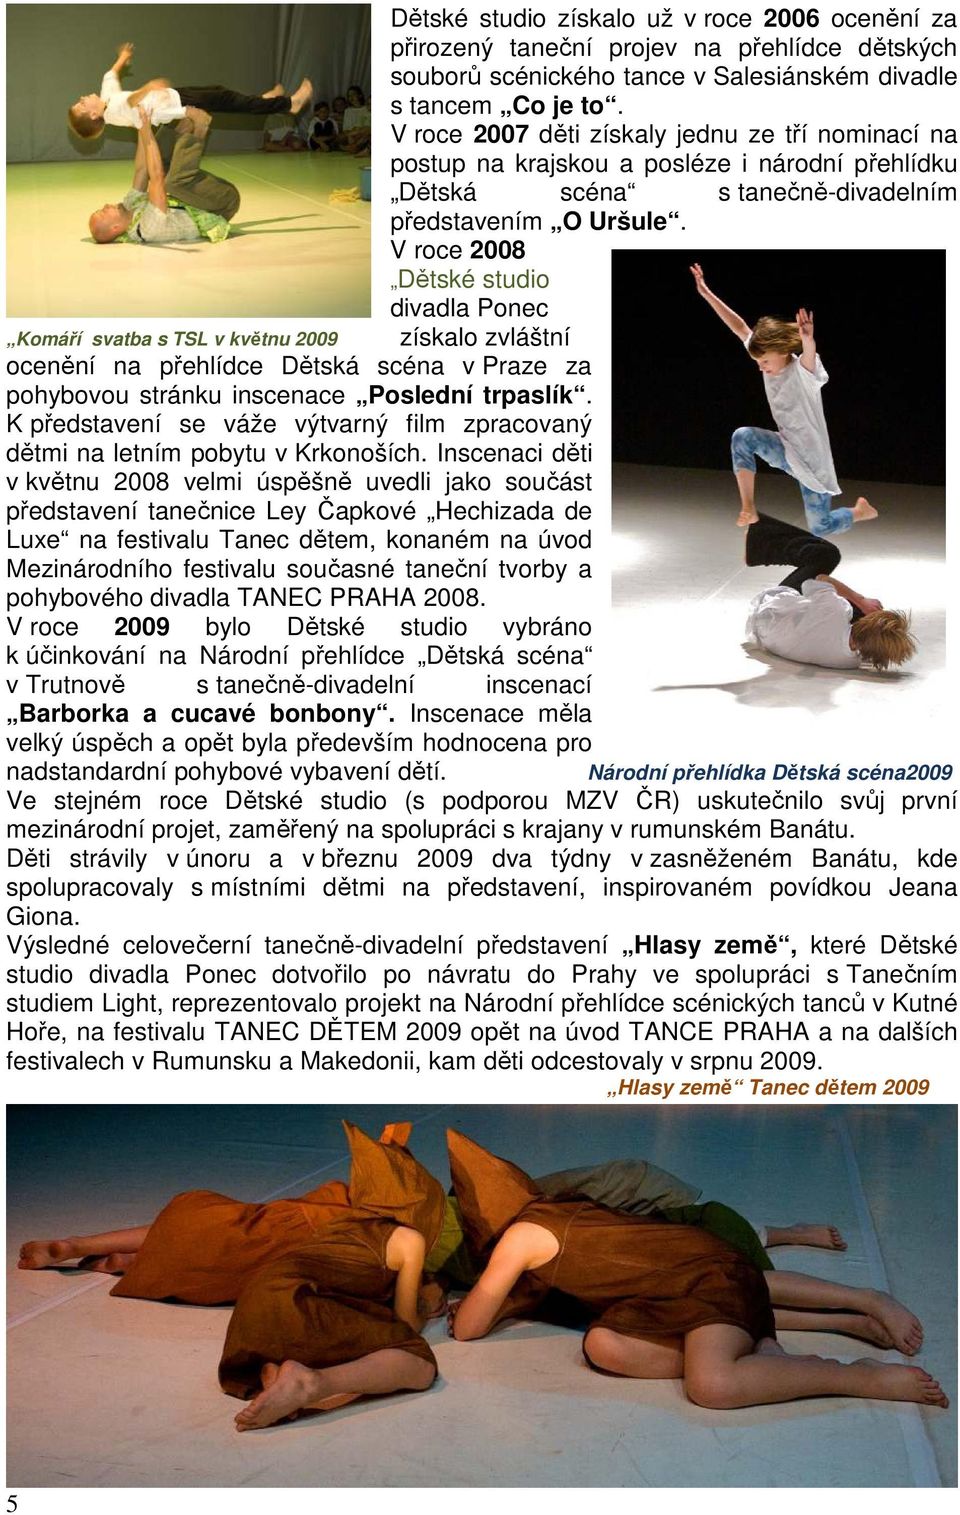 V roce 2008 Dětské studio divadla Ponec Komáří svatba s TSL v květnu 2009 získalo zvláštní ocenění na přehlídce Dětská scéna v Praze za pohybovou stránku inscenace Poslední trpaslík.